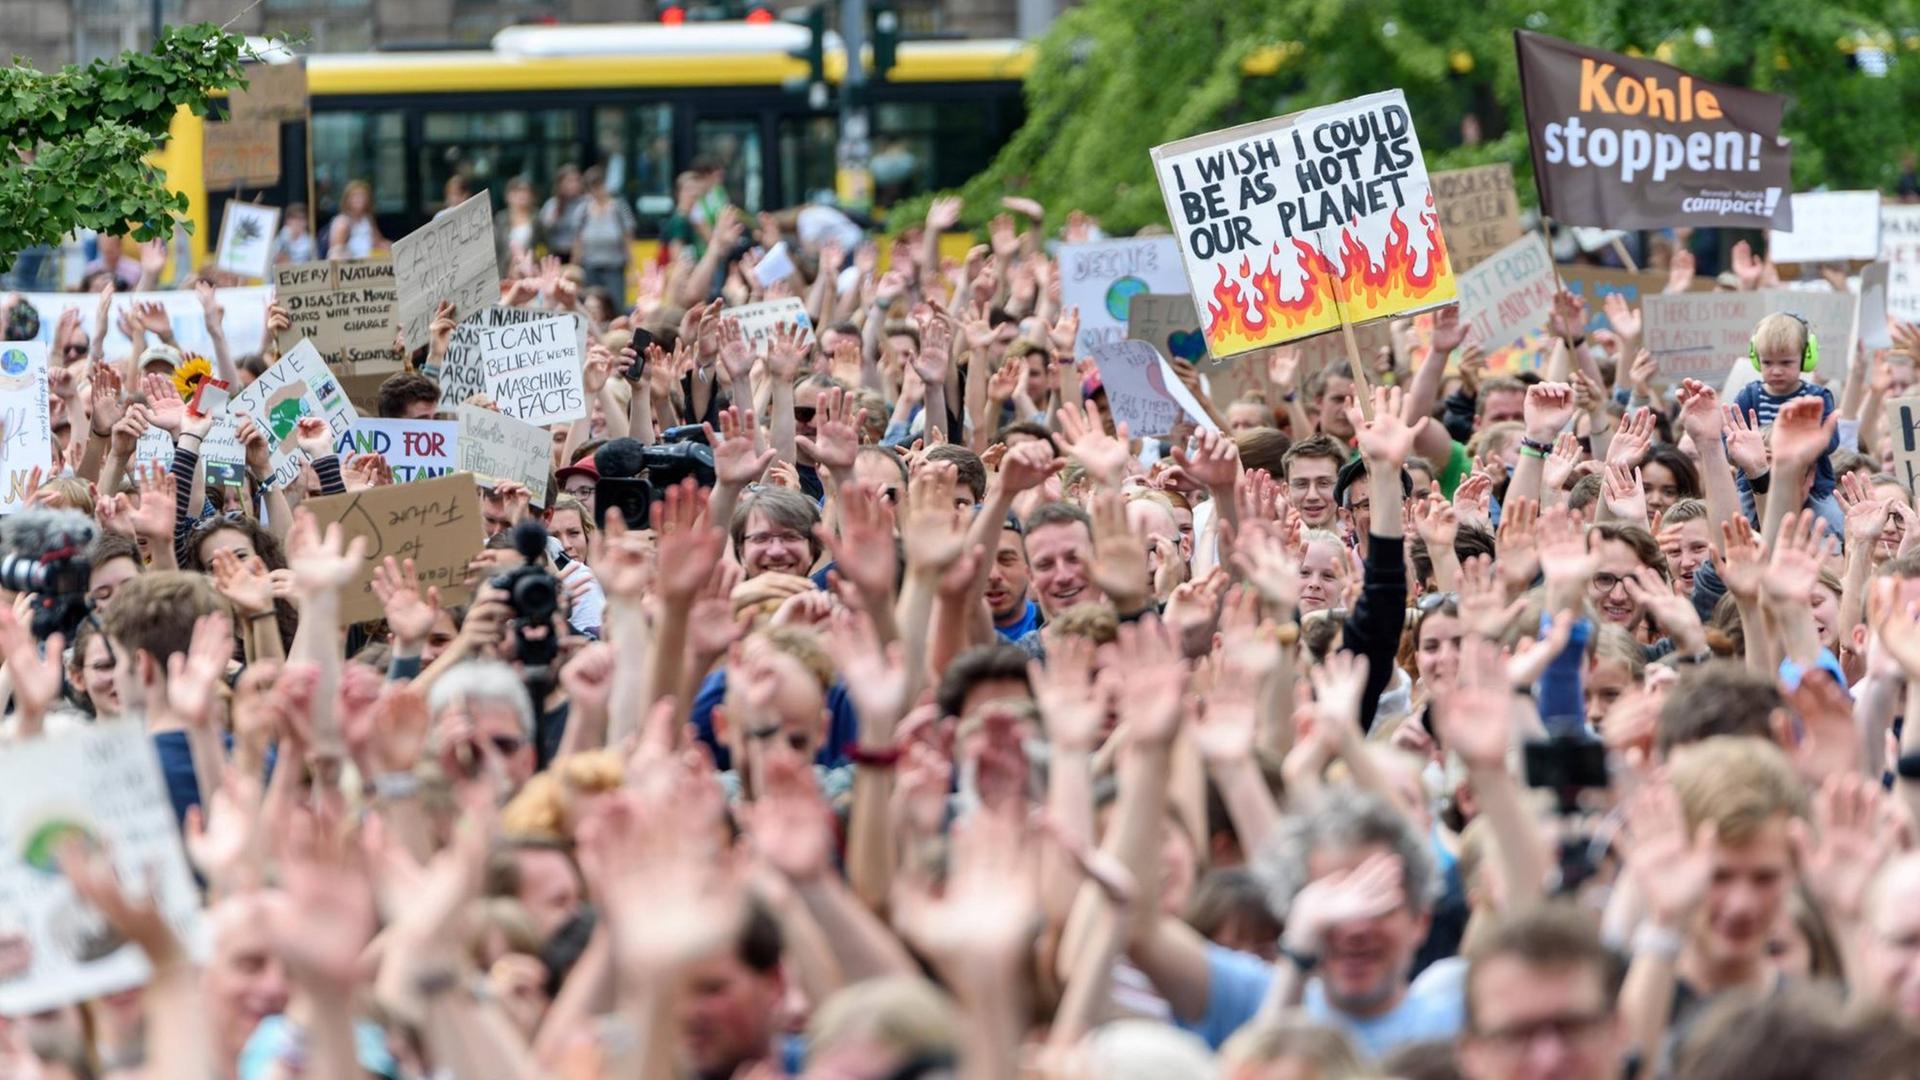 Schüler der Bewegung "Fridays for Future" fordern mit ihrem wöchentlichen Protest in Berlin unter anderem den sofortigen Kohleausstieg